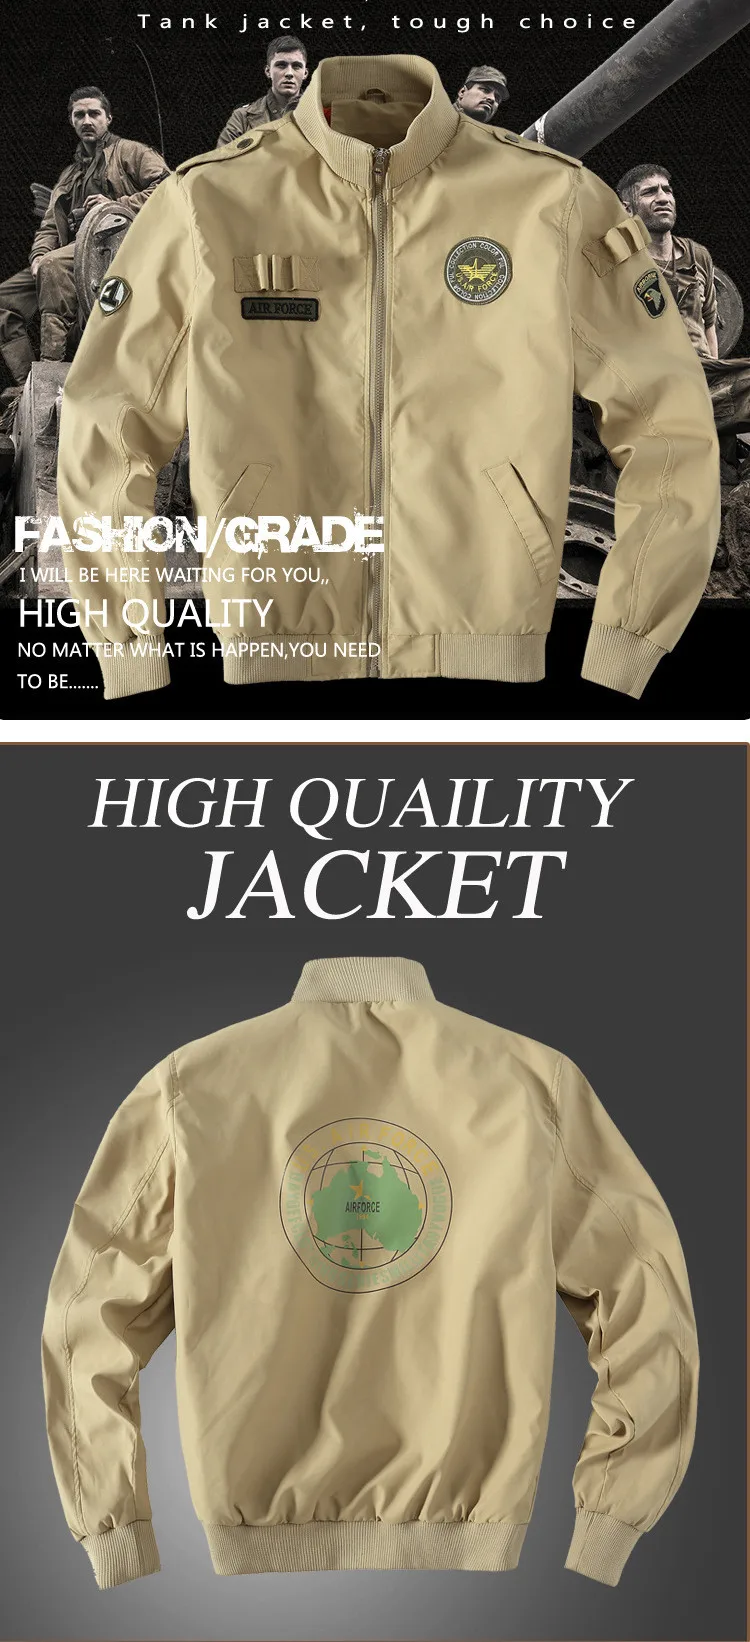 Осень Air Force 1 полета Куртки Для мужчин Повседневное хлопок Куртки высокое качество Армейский зеленый милитари Куртки Для мужчин s Bomber coat 4XL